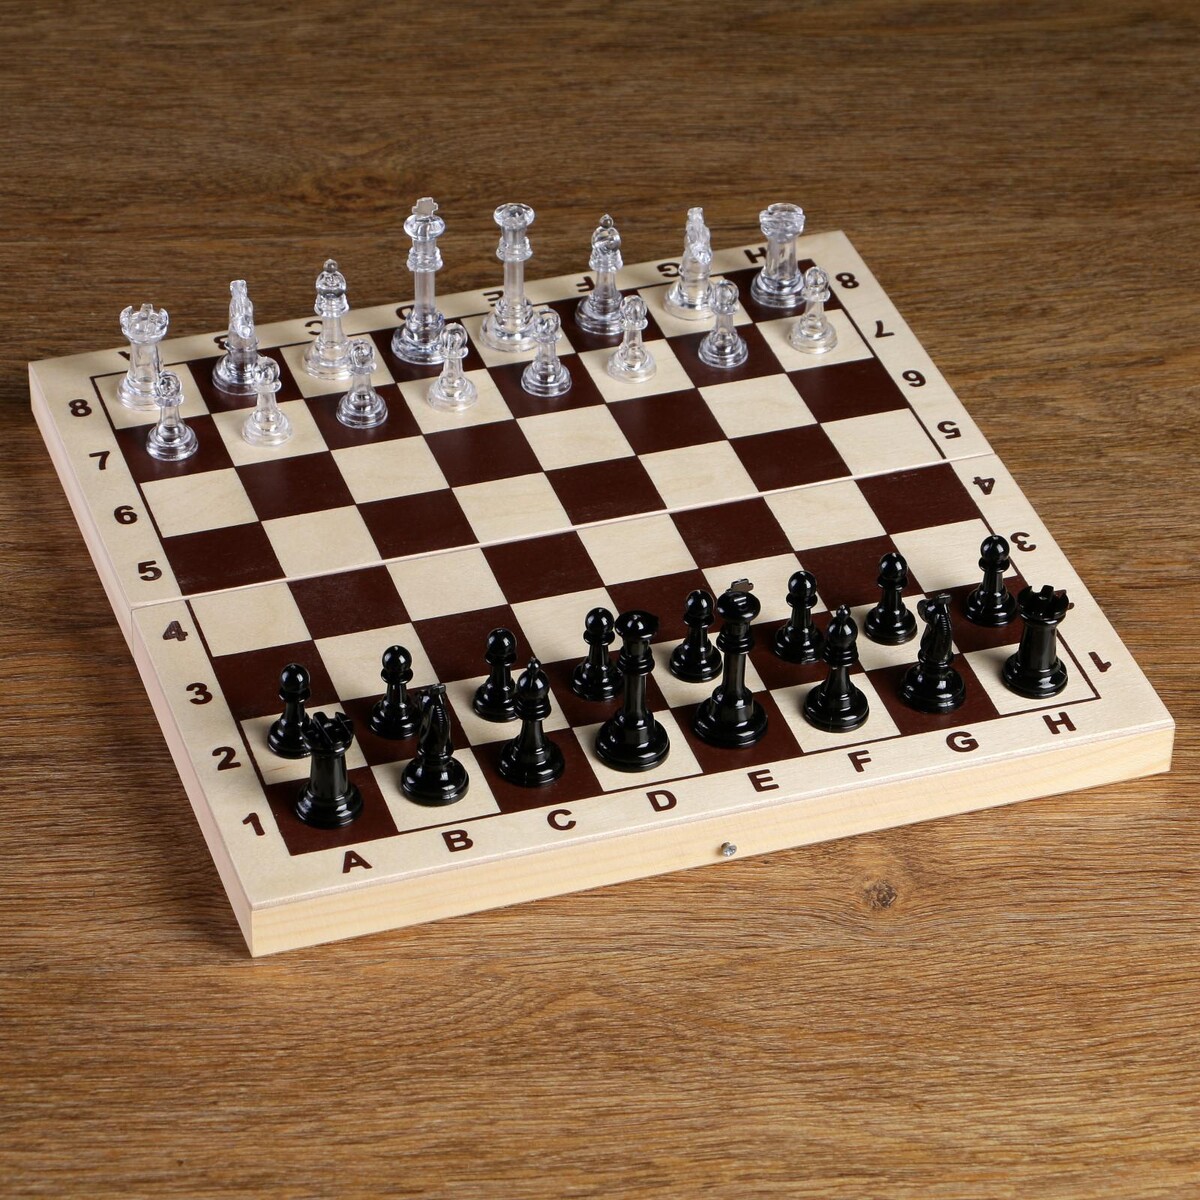 Шахматные фигуры, король h-5.8 см, пешка h-2.8 см стрекоза король и драконы